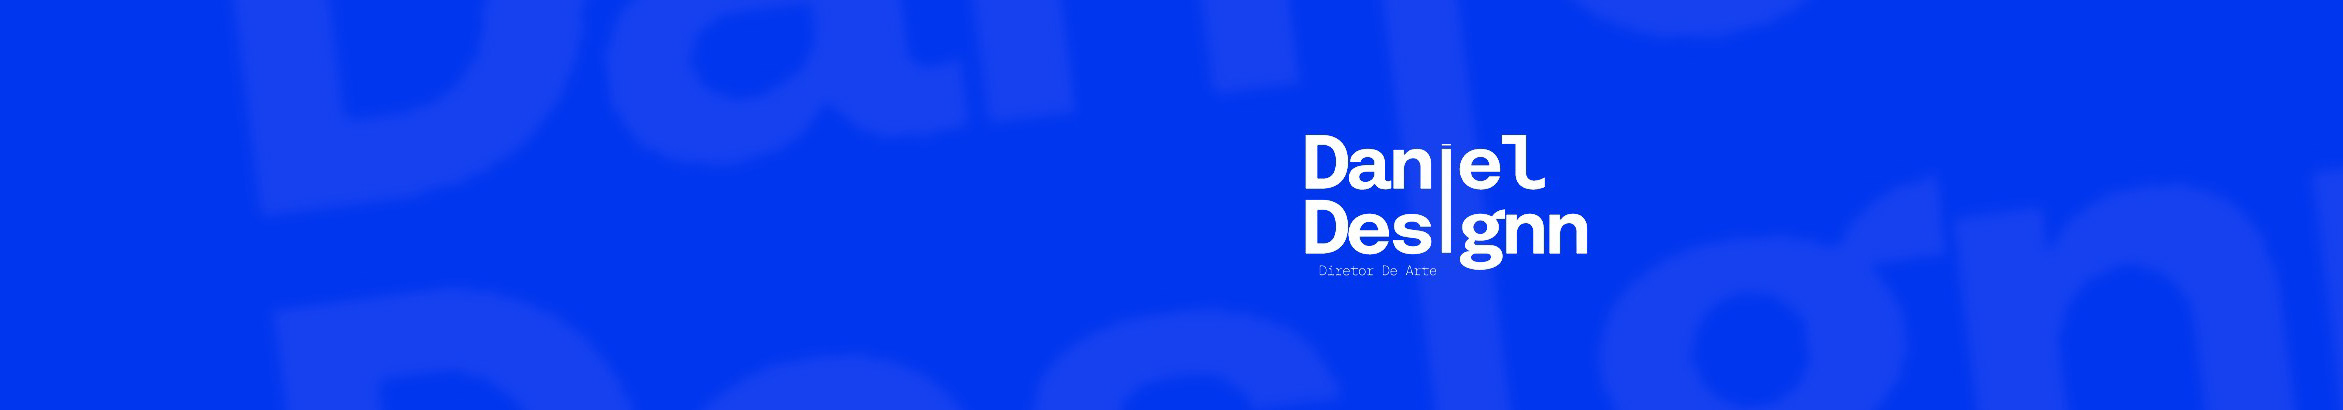 Daniel Designn profil başlığı